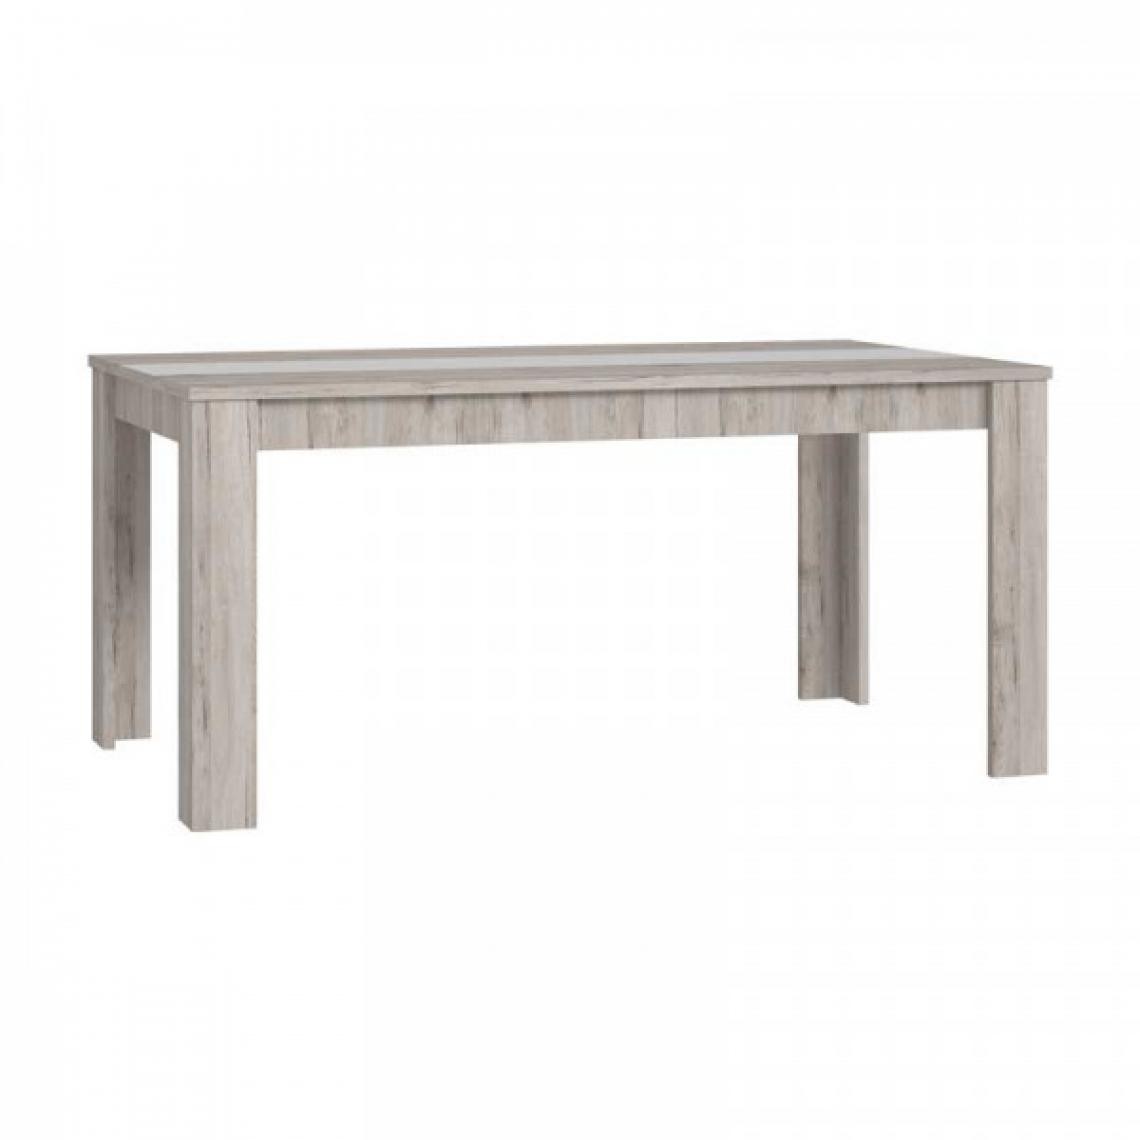 Dansmamaison - Table de repas rectangulaire Bois/Blanc - LUGA - L 160 x l 90 x H 75 cm - Tables à manger